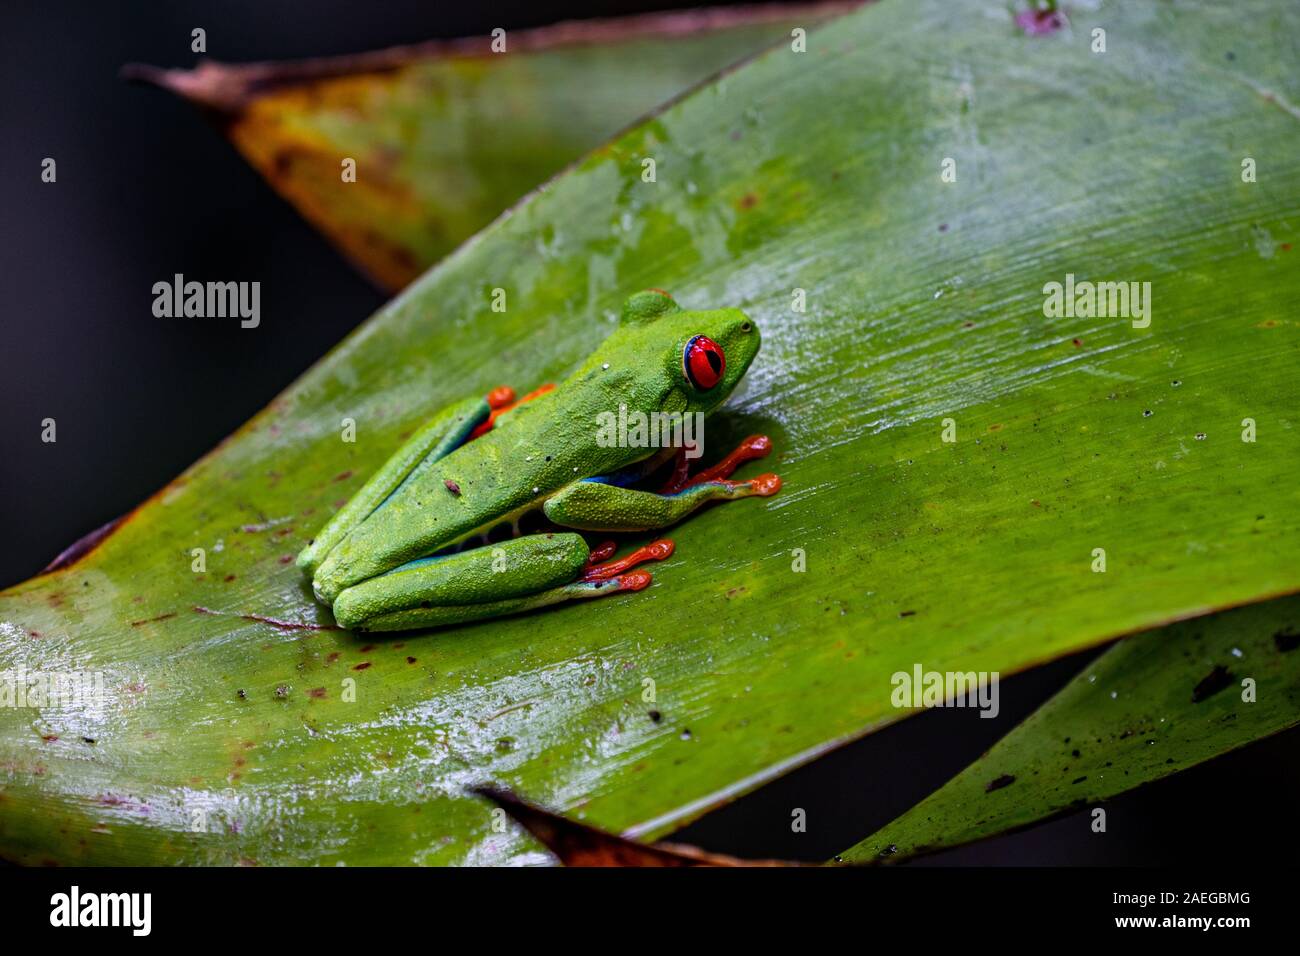 Rainette aux yeux rouges (agalychnis callidryas) au Costa Rica Rainforest. Cette grenouille est trouvé dans les forêts tropicales d'Amérique centrale, où il vit Banque D'Images